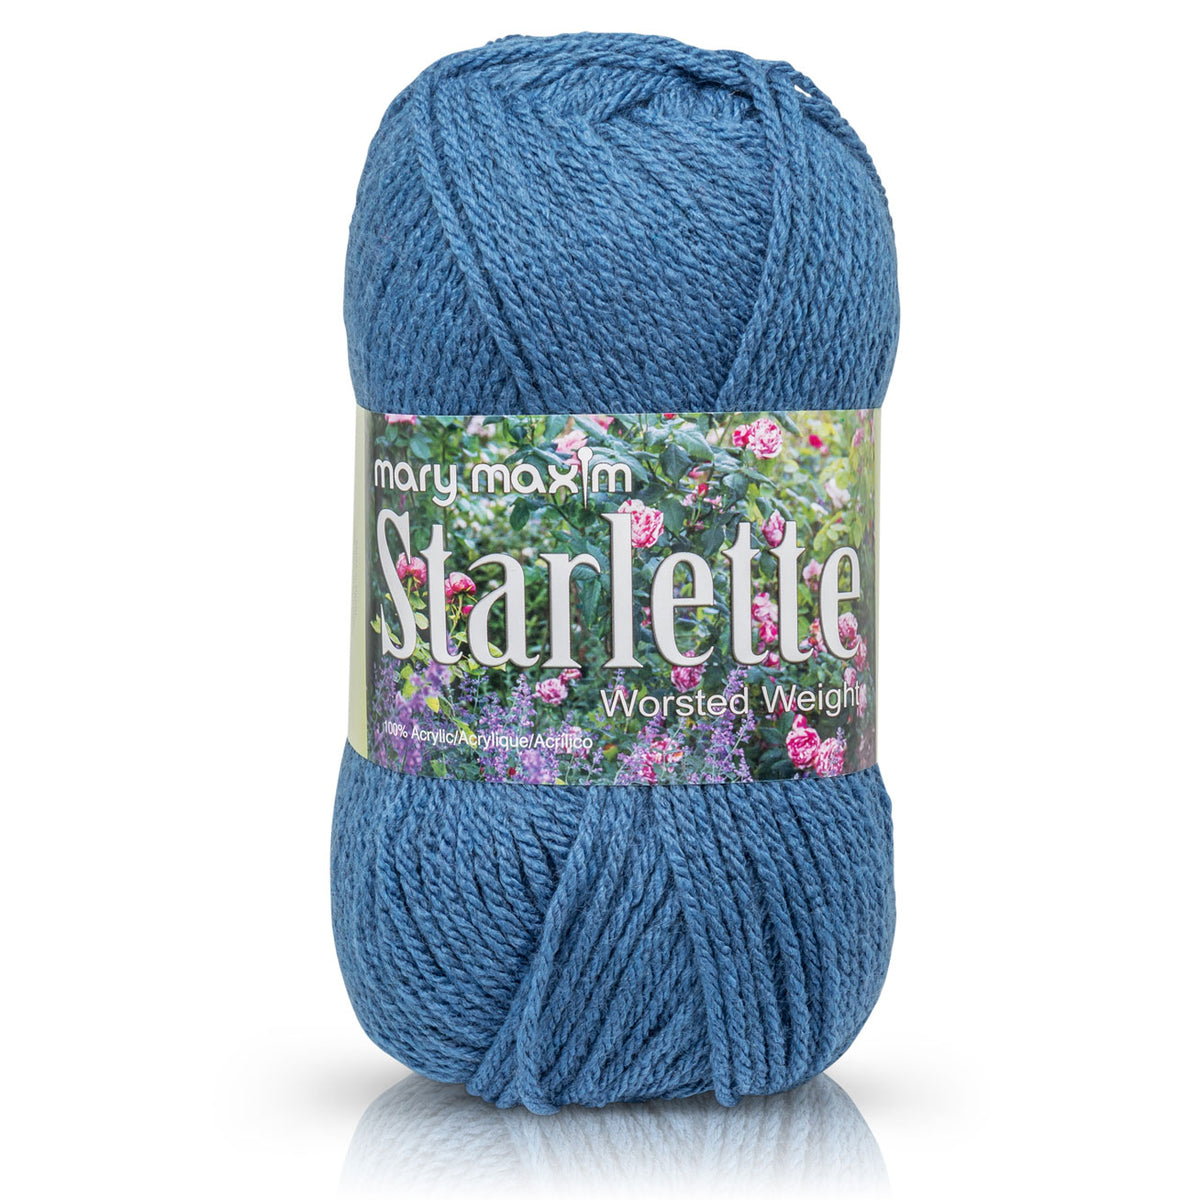 Starlette Yarn